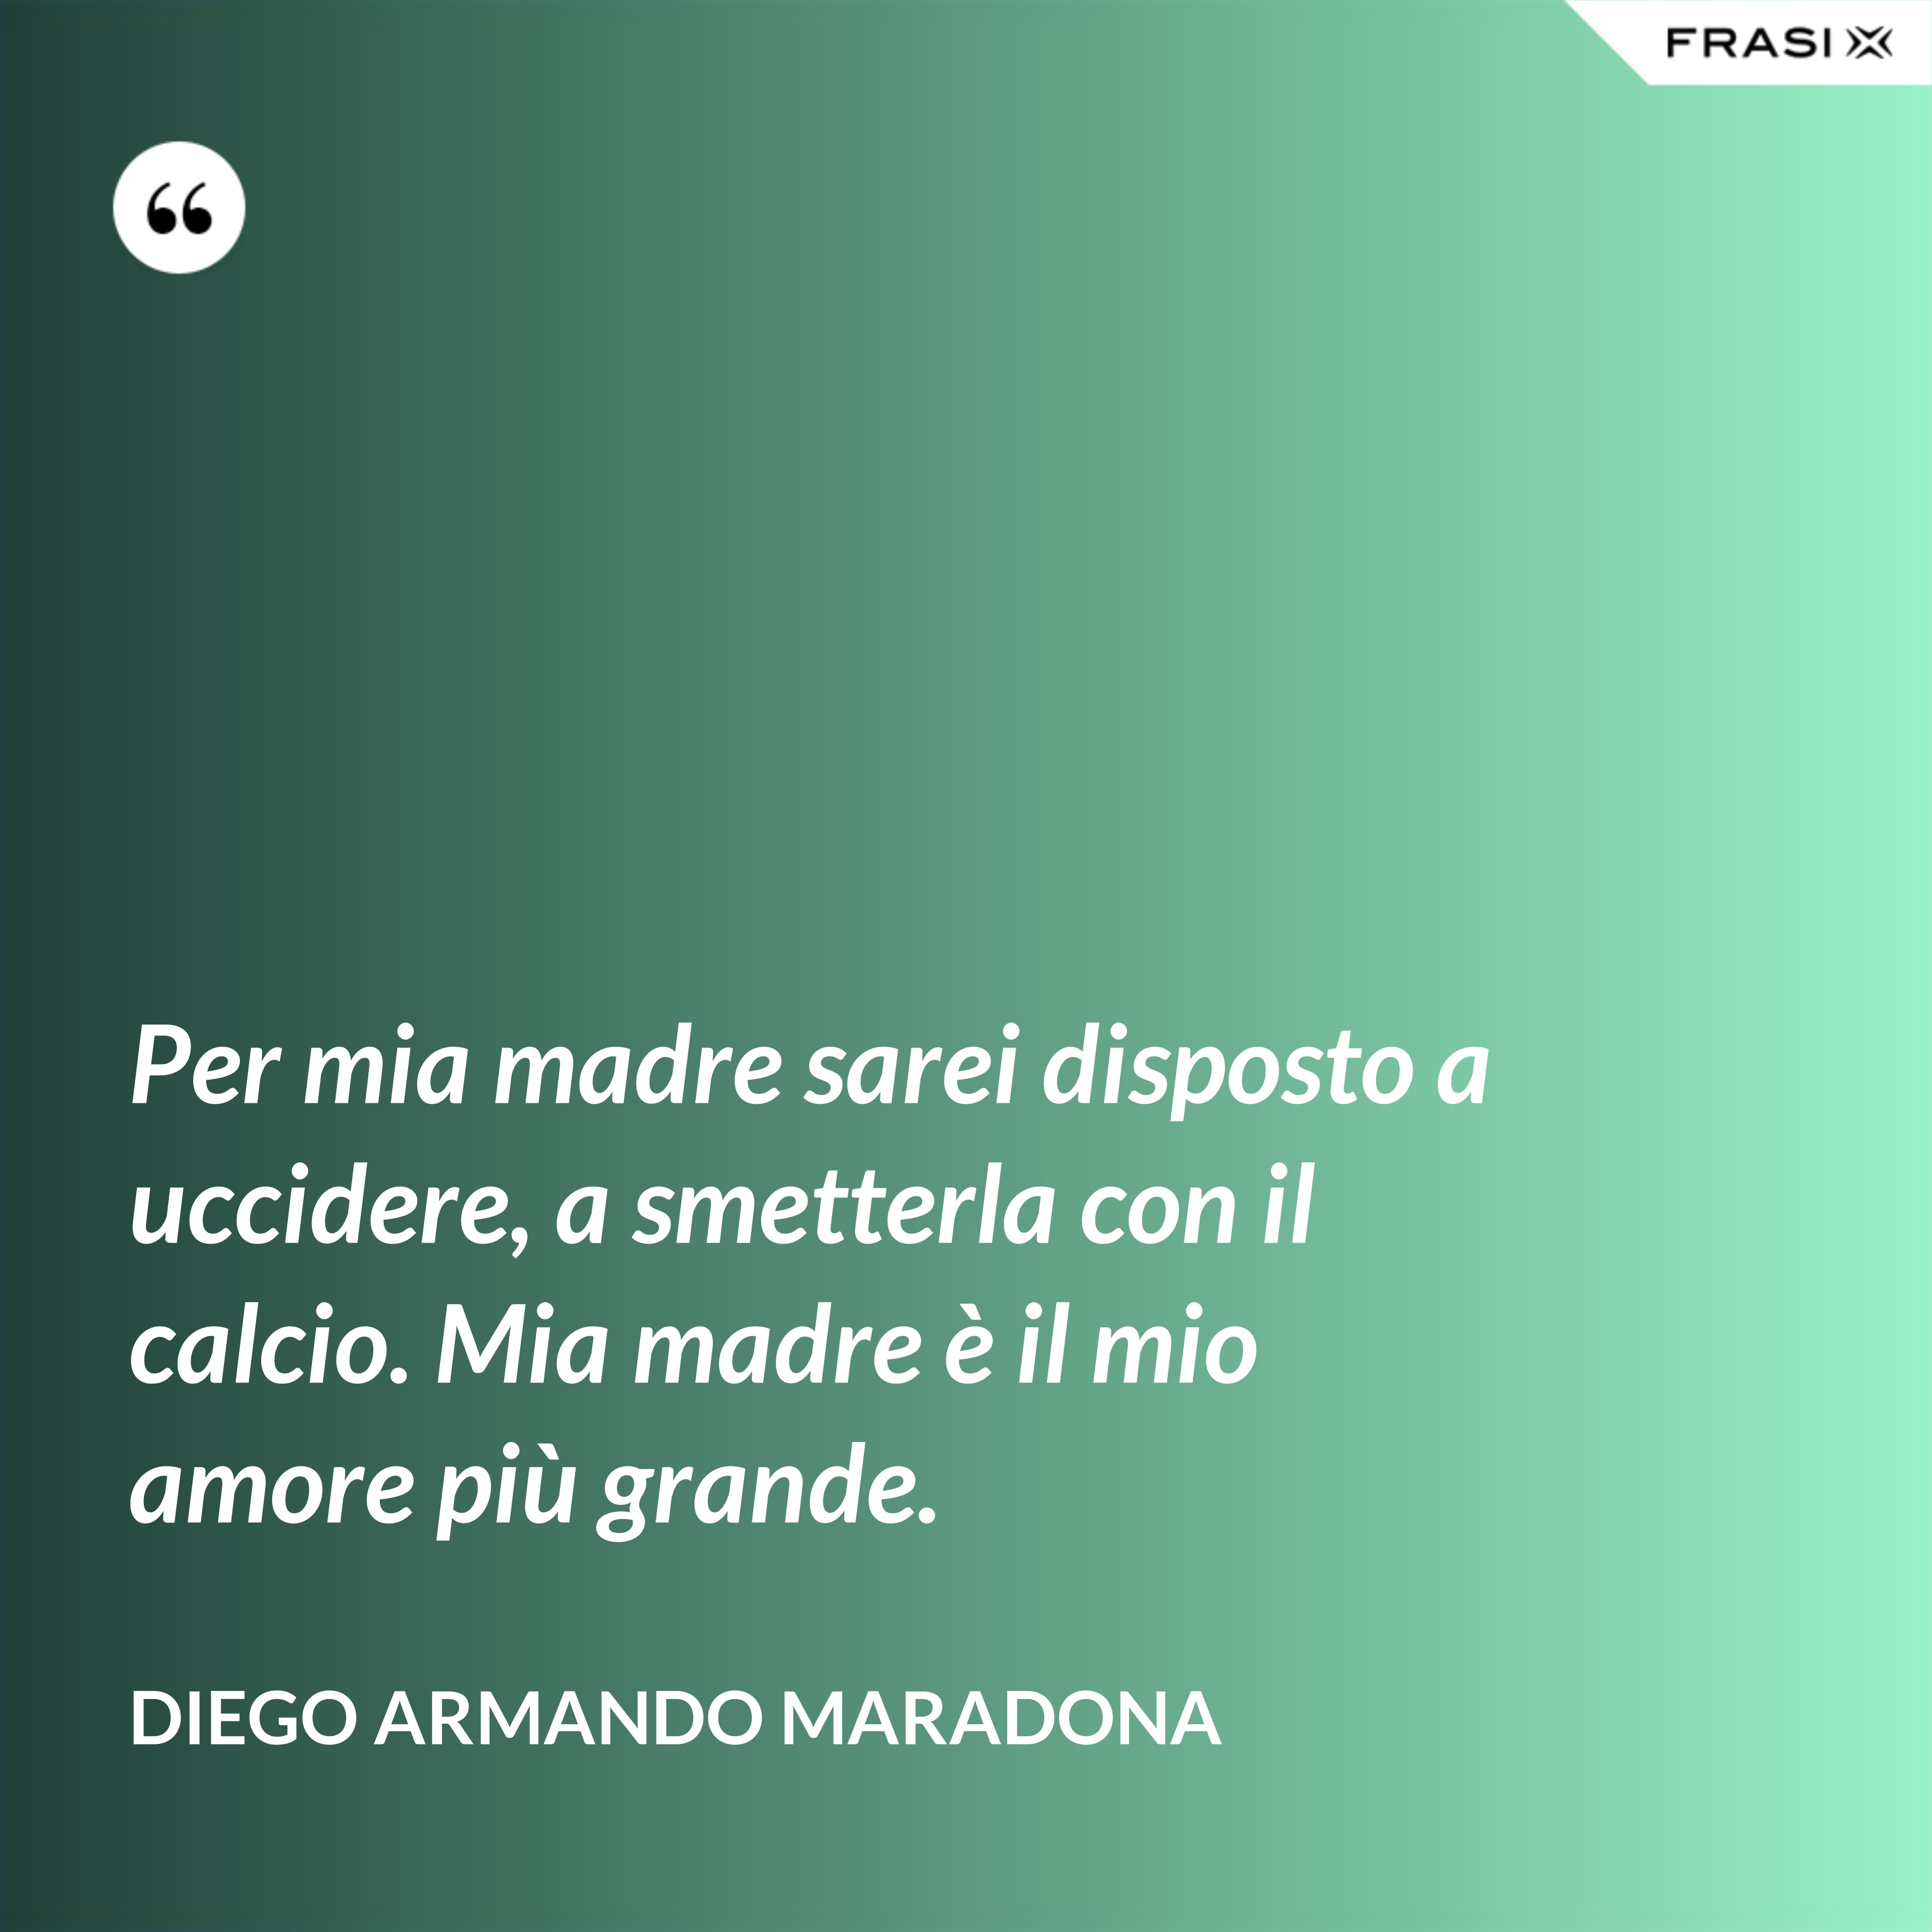 Per mia madre sarei disposto a uccidere, a smetterla con il calcio. Mia madre è il mio amore più grande. - Diego Armando Maradona